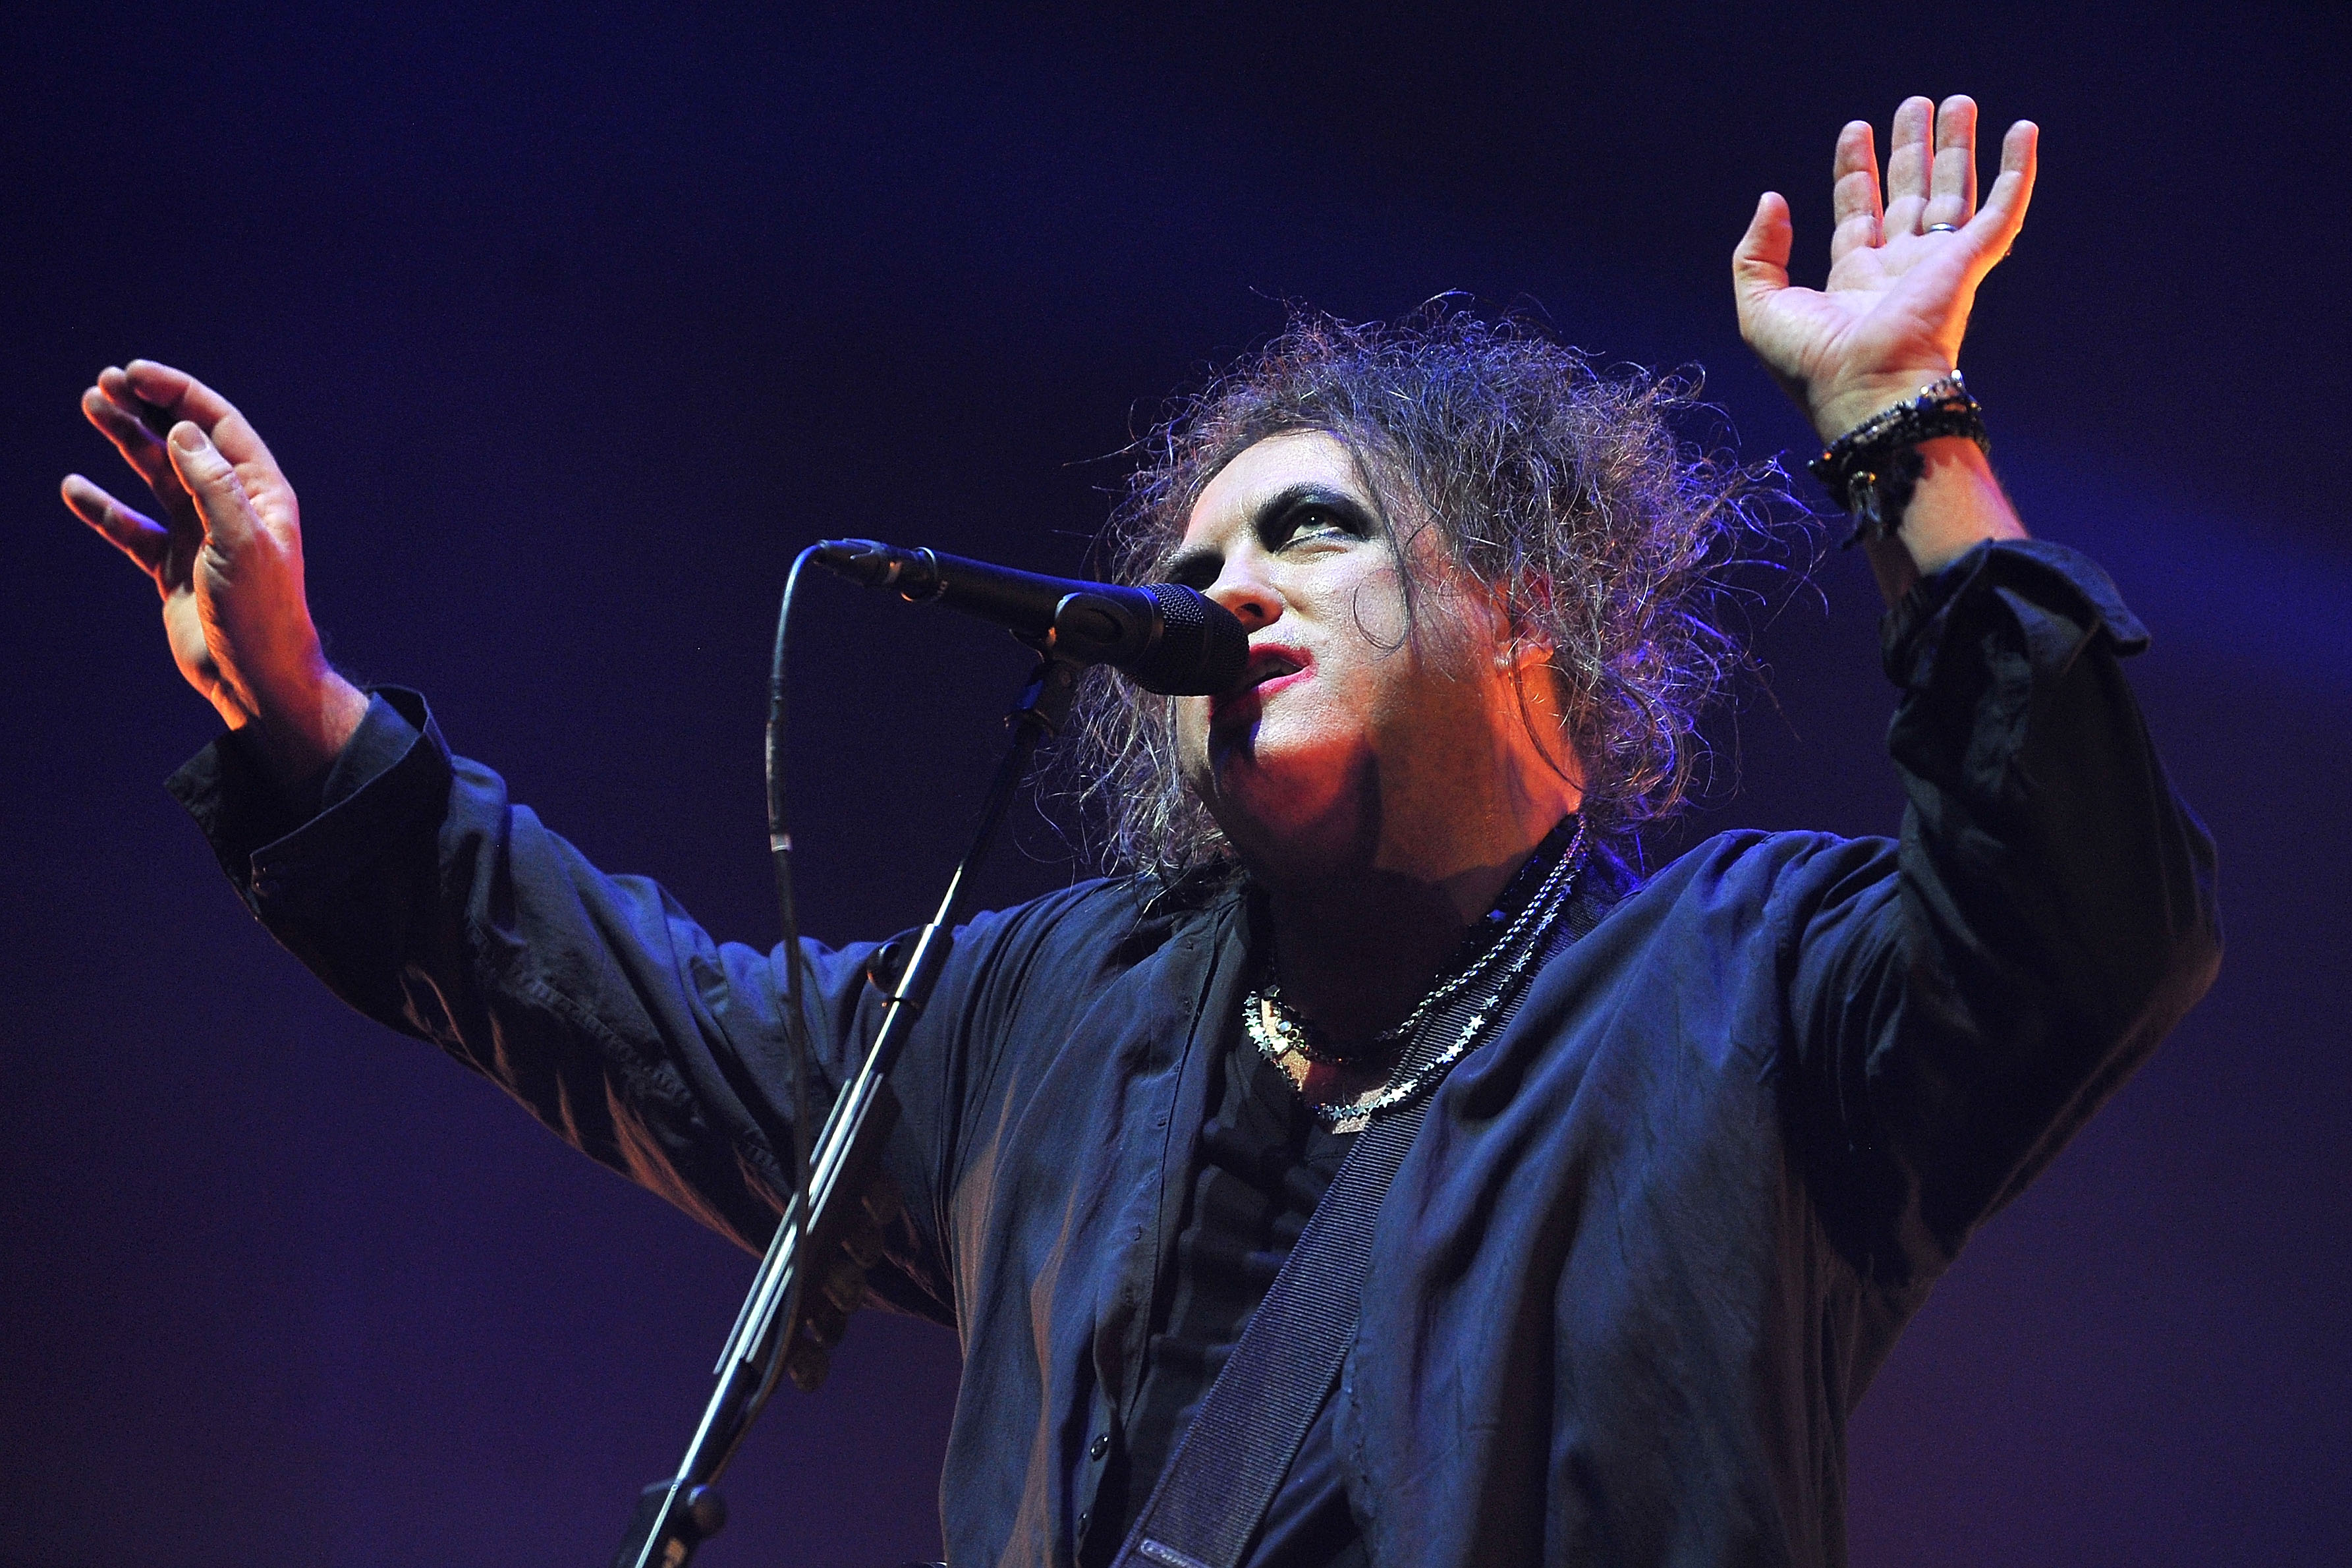 Robert Smith de The Cure actúa en directo en el escenario del Wembley Arena el 1 de diciembre de 2016, en Londres, Inglaterra. | Foto: Getty Images